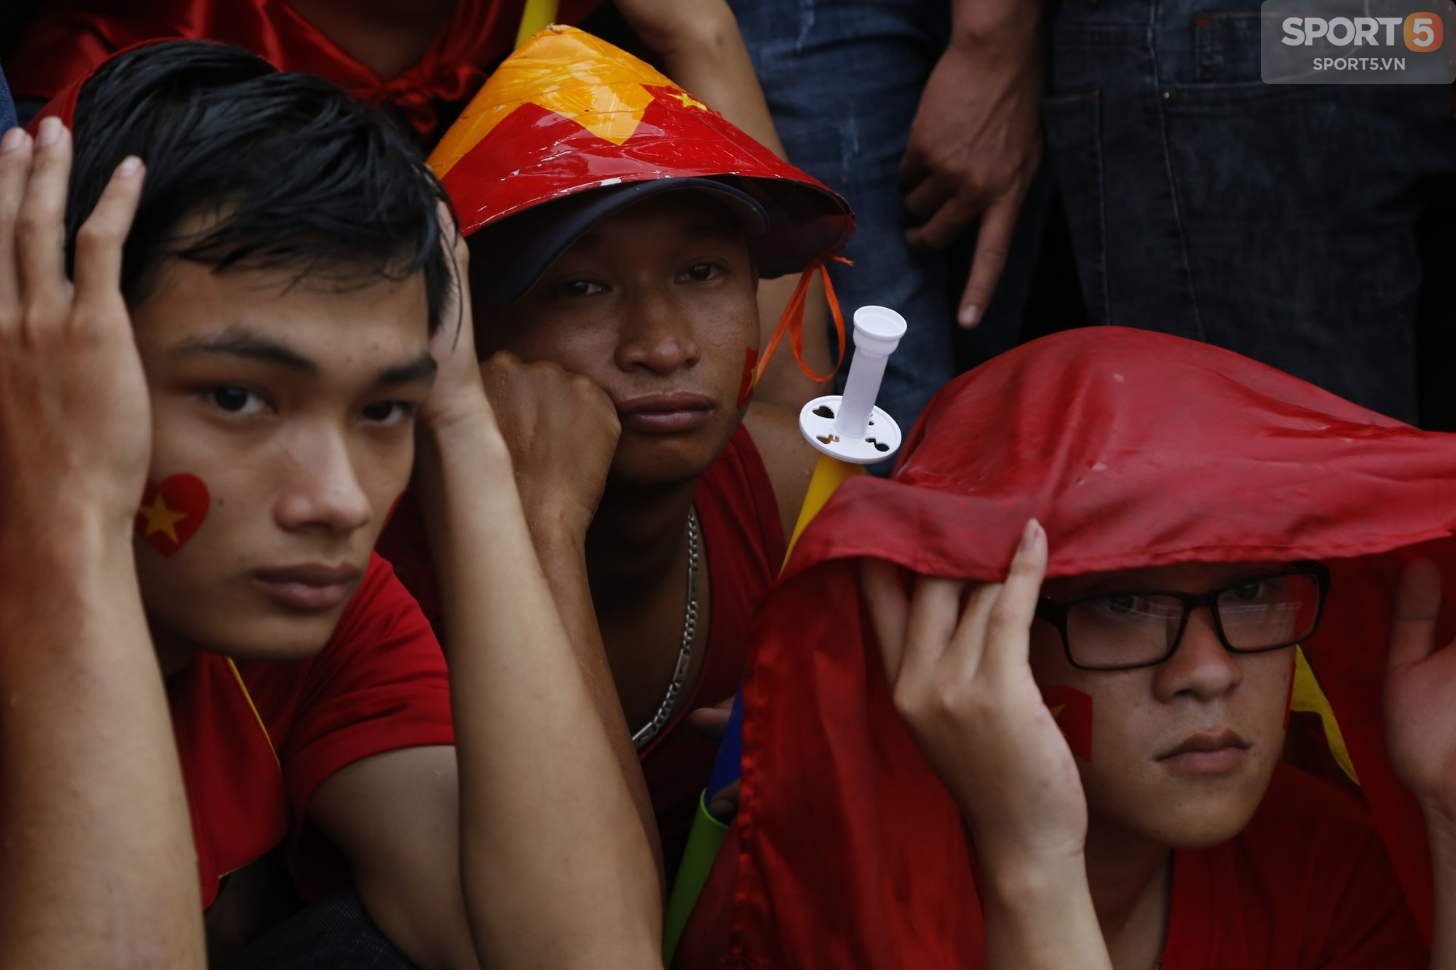 Mặc kệ thắng thua, mưa gió, người hâm mộ vẫn cháy hết mình vì một Olympic Việt Nam bất khuất - Ảnh 8.